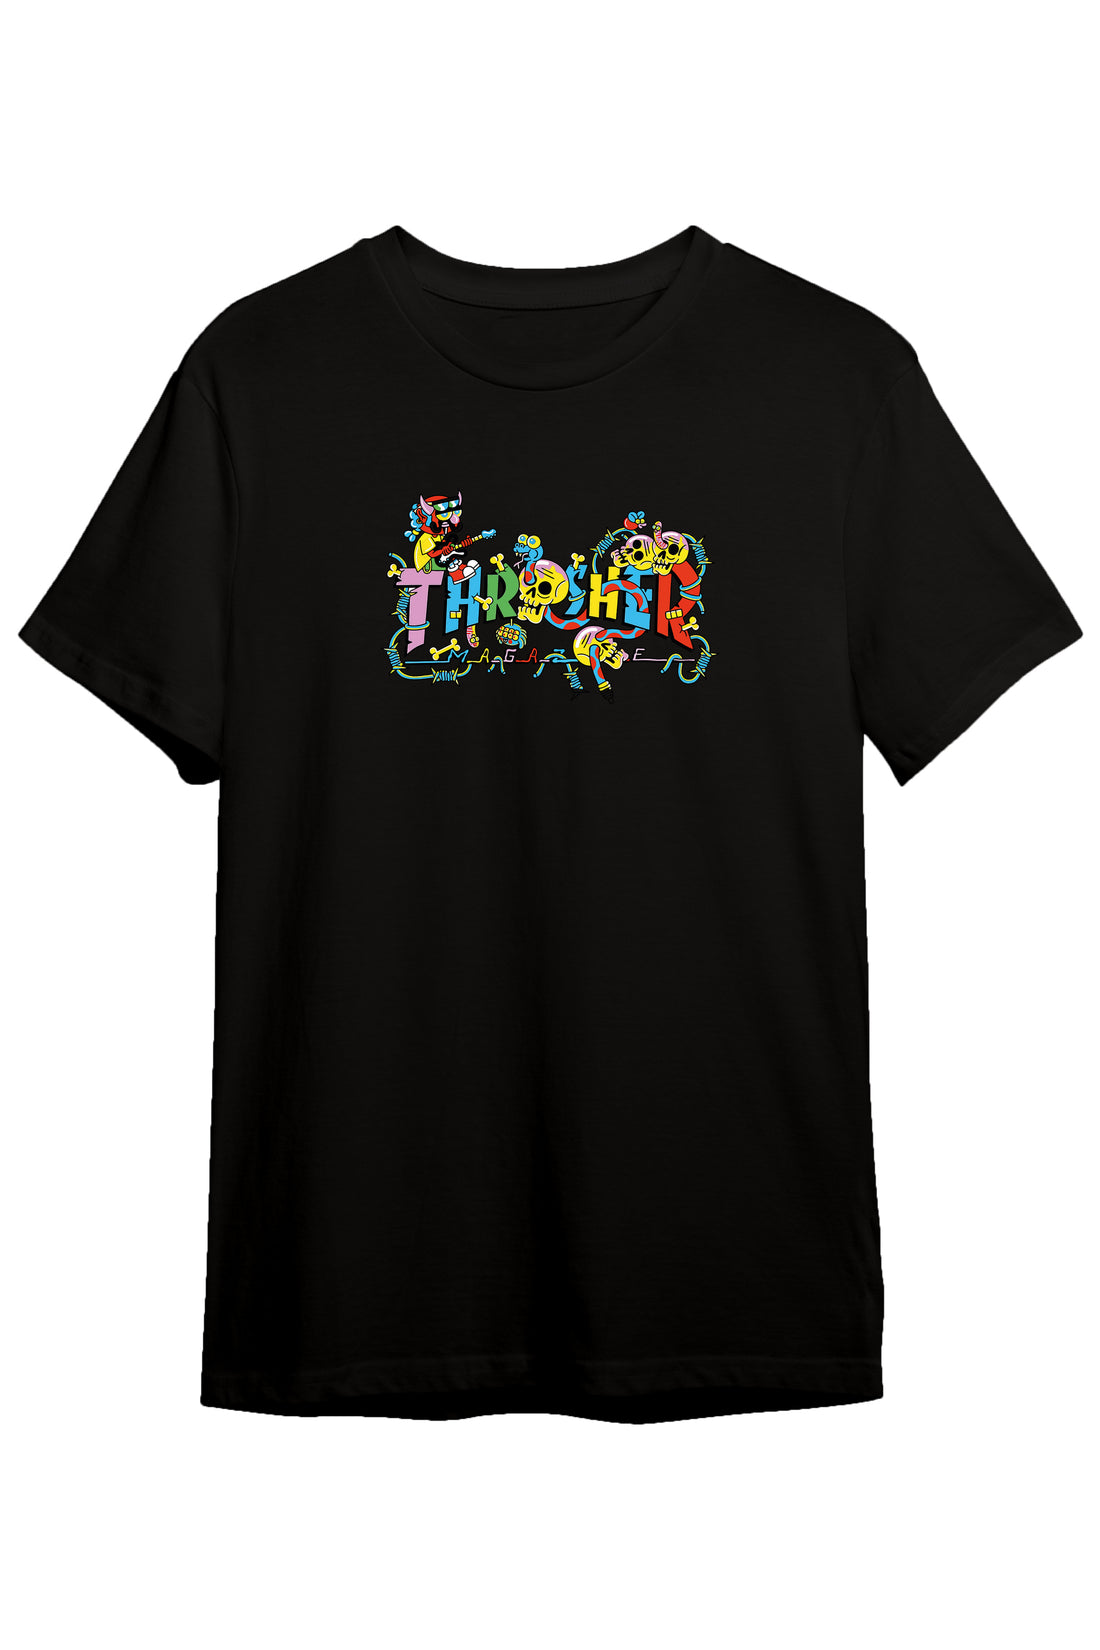 Thrusher - Regular Tshirt